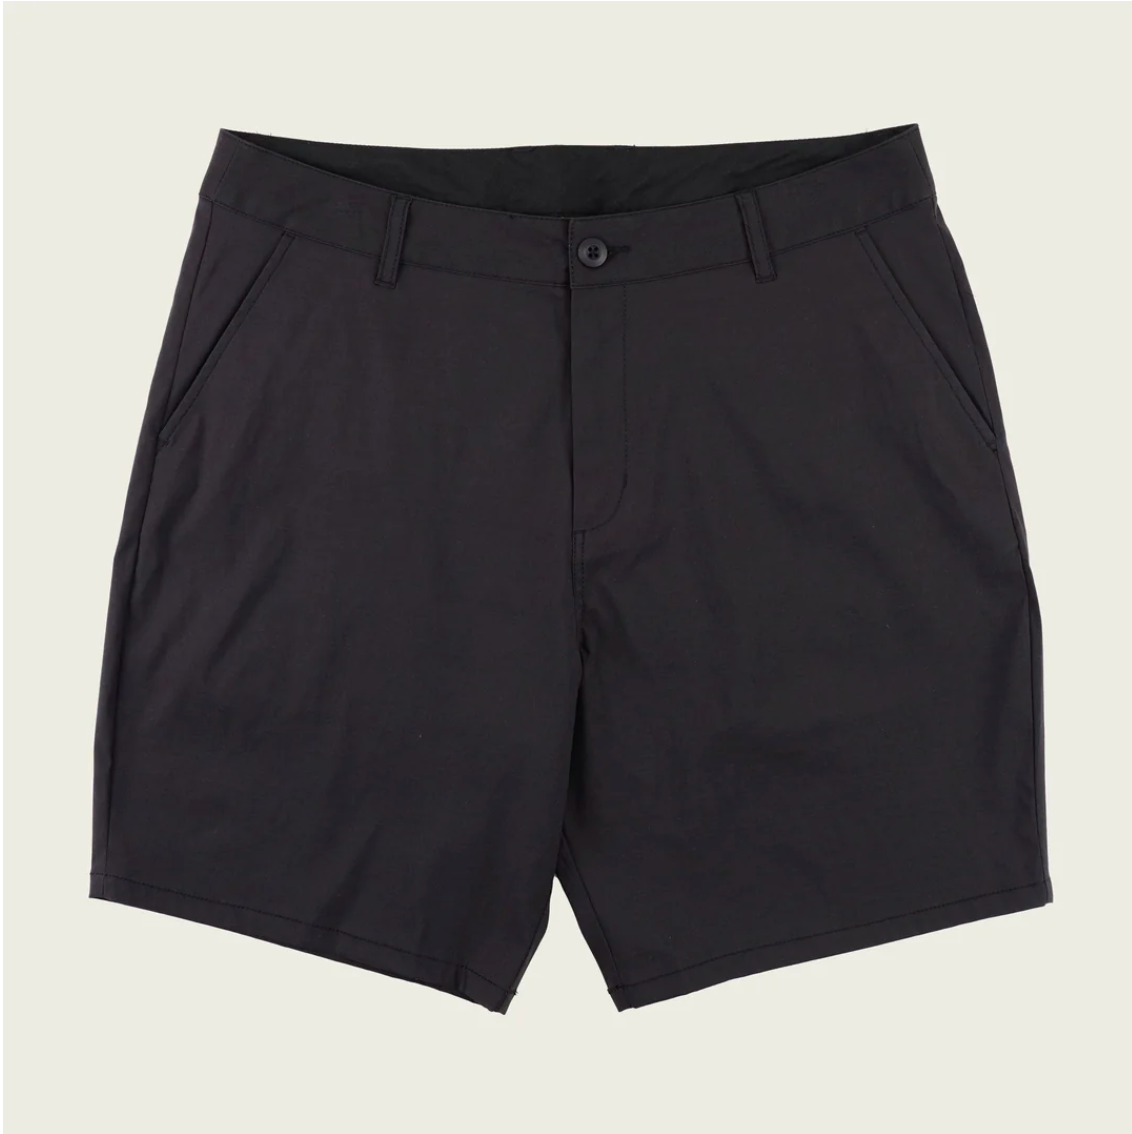 Marsh Prime Shorts Black